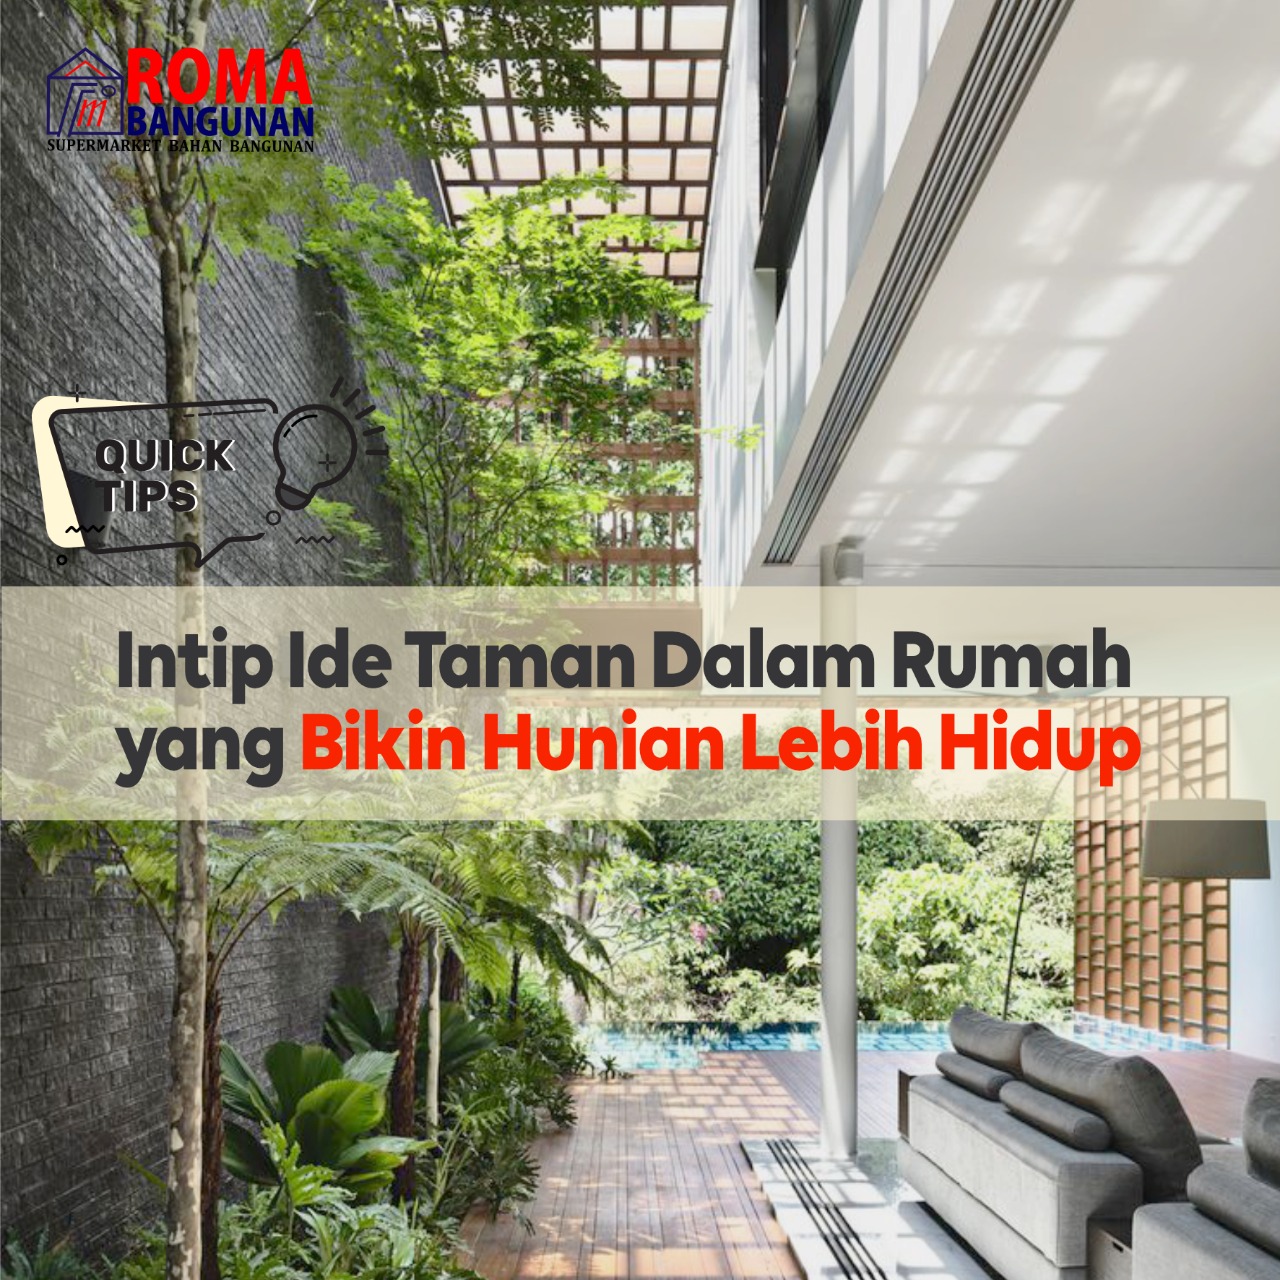 You are currently viewing Intip Ide Taman Dalam Rumah yang Bikin Hunian Lebih Hidup!